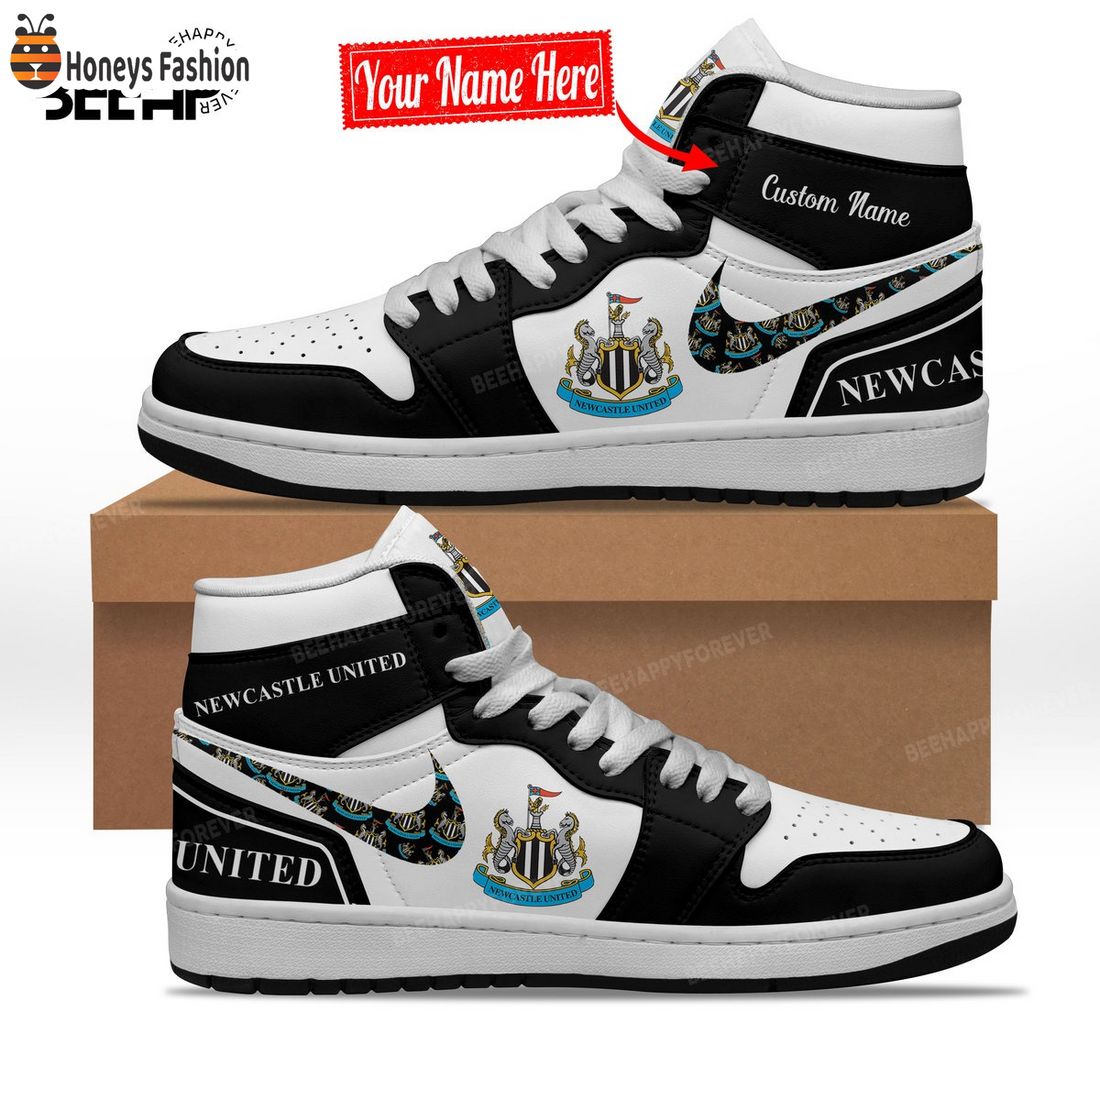 Newcastle United Custom Name Nike Air Jordan 1 Shoes